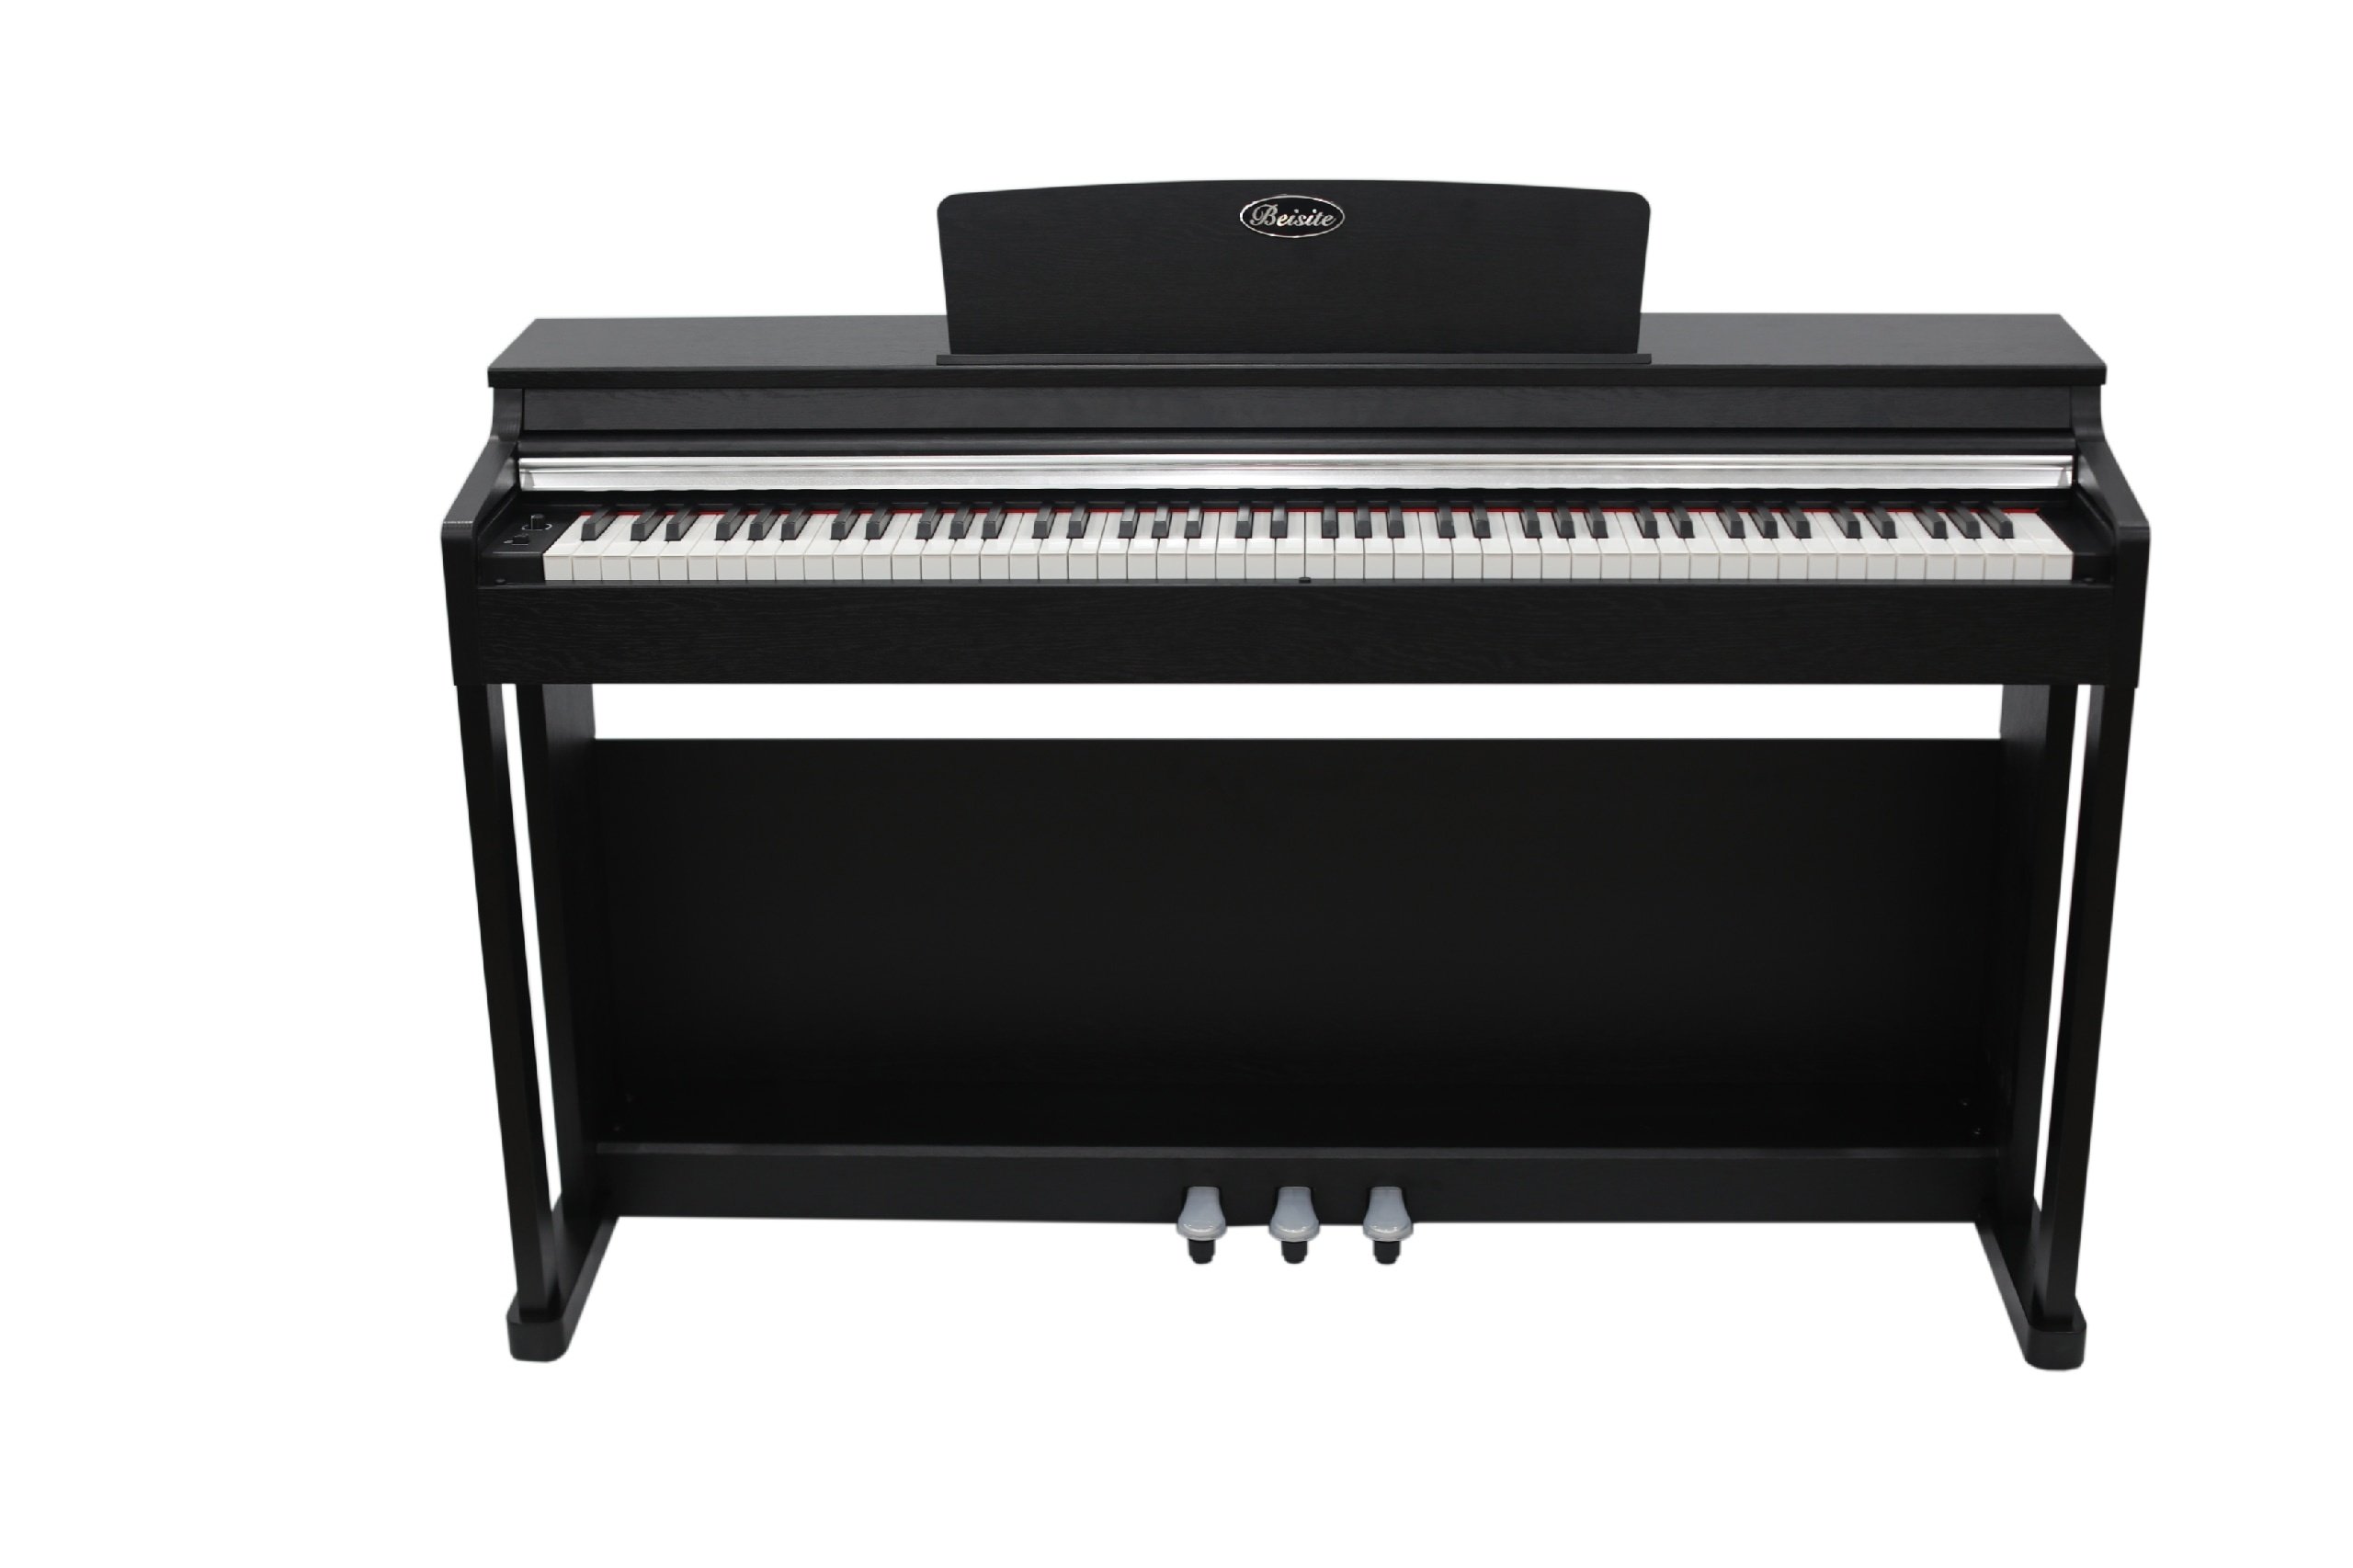 Beisite B-89 Pro BK Цифровое фортепиано. Черный. Клавиатура: 88 клавиш рояльного типа